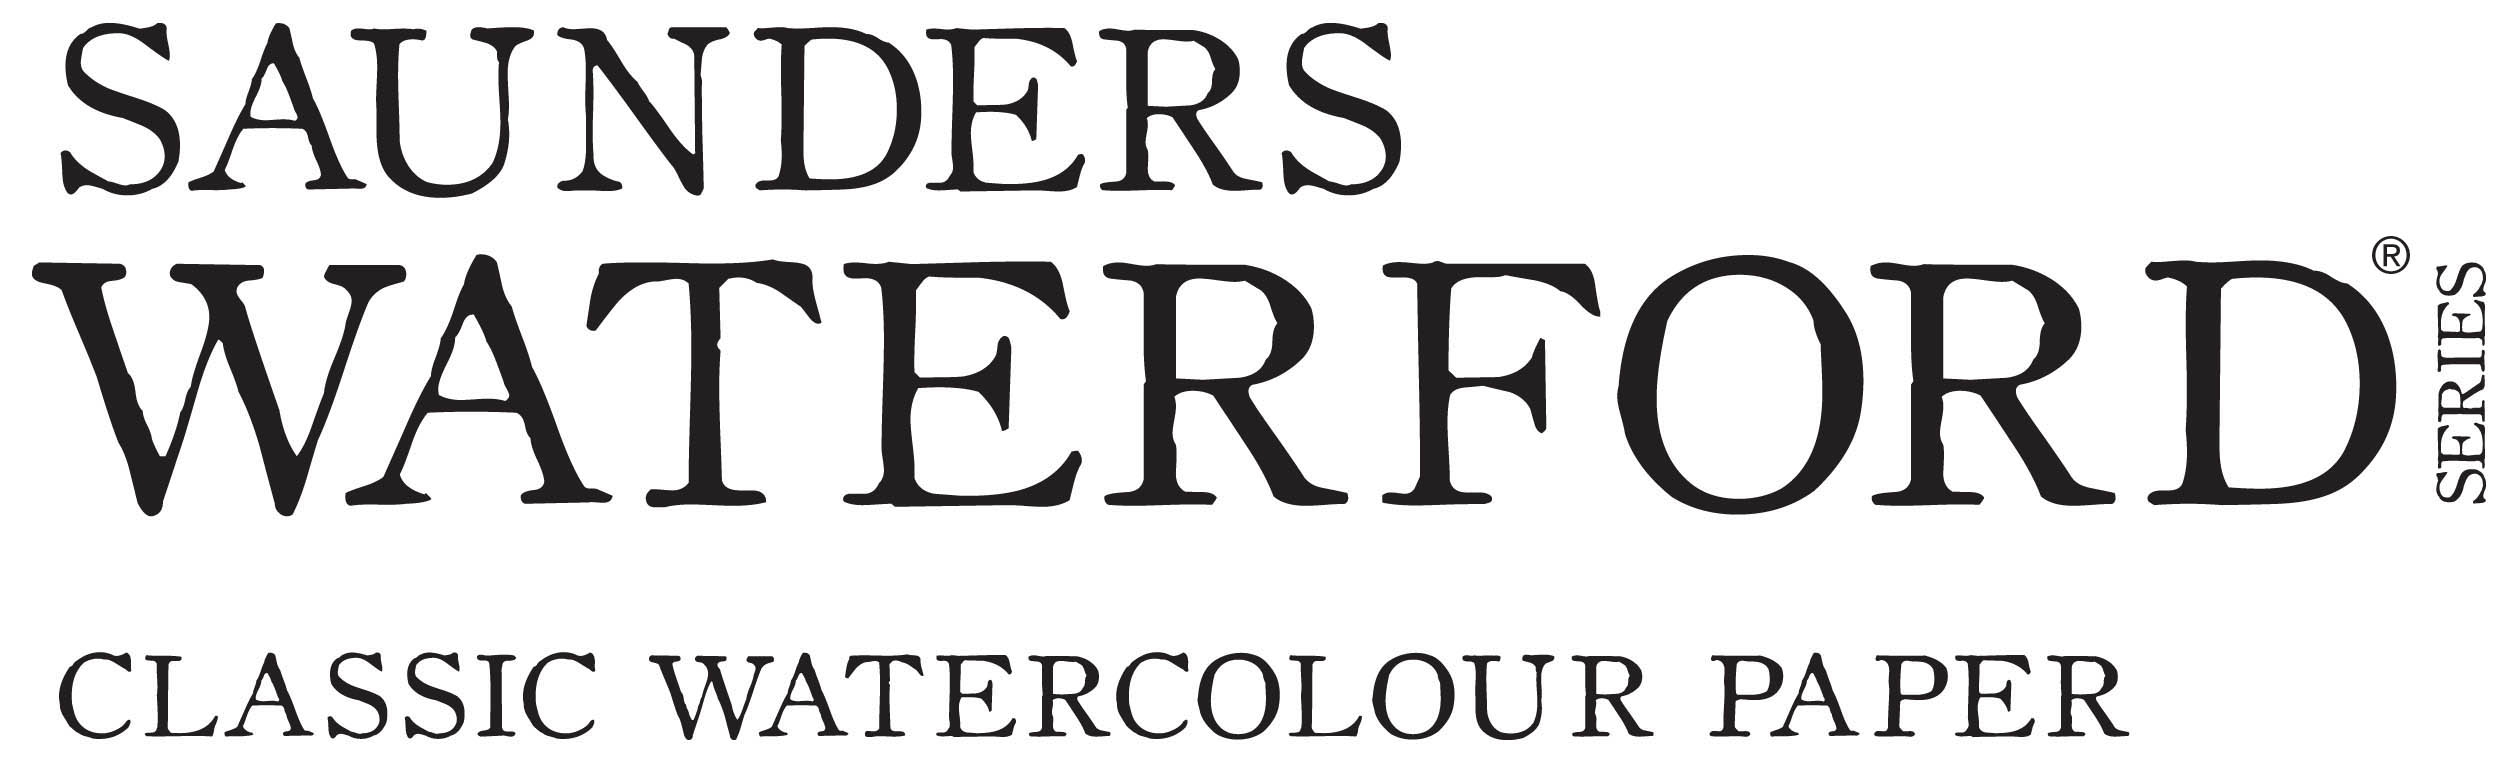 Saunders Waterford logo